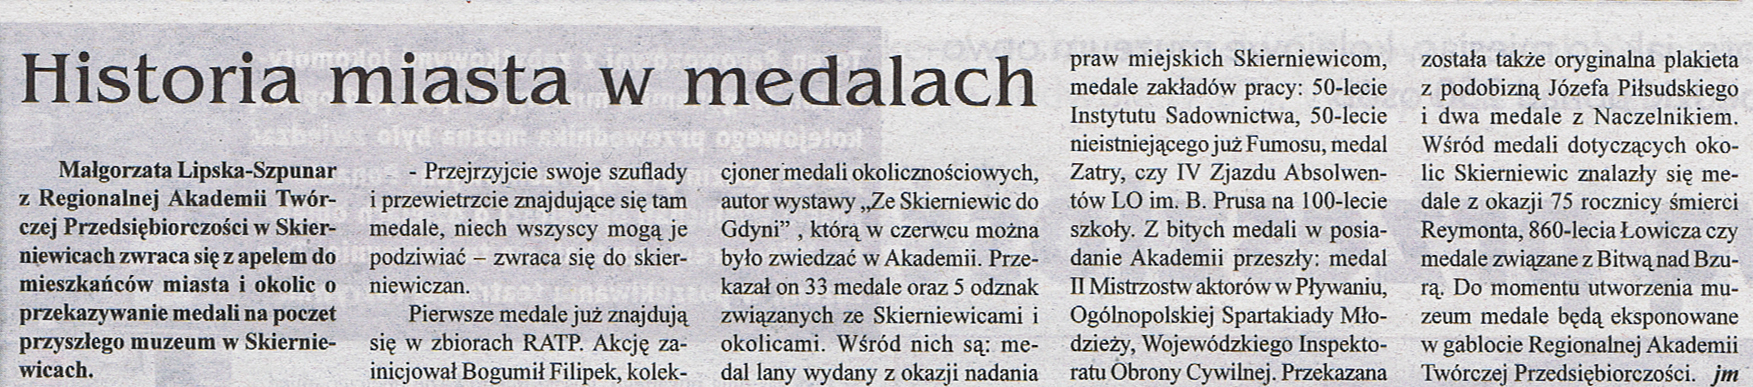 2012_07_12_glos-skierniewic-i-okolic_nr-28700-historia-miasta-w-metalach